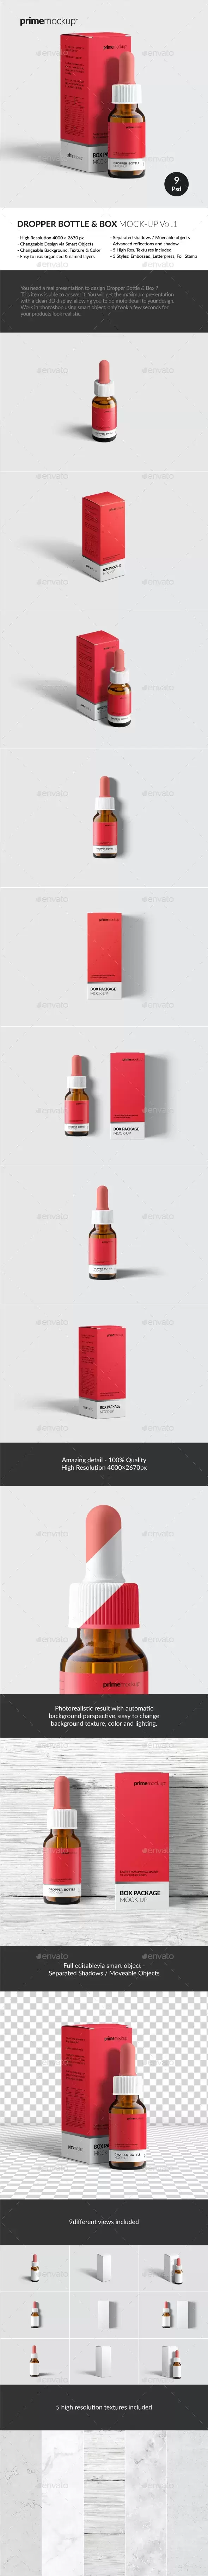 药物滴管瓶和纸盒包装样机套装[1.21GB,PSD]免费下载